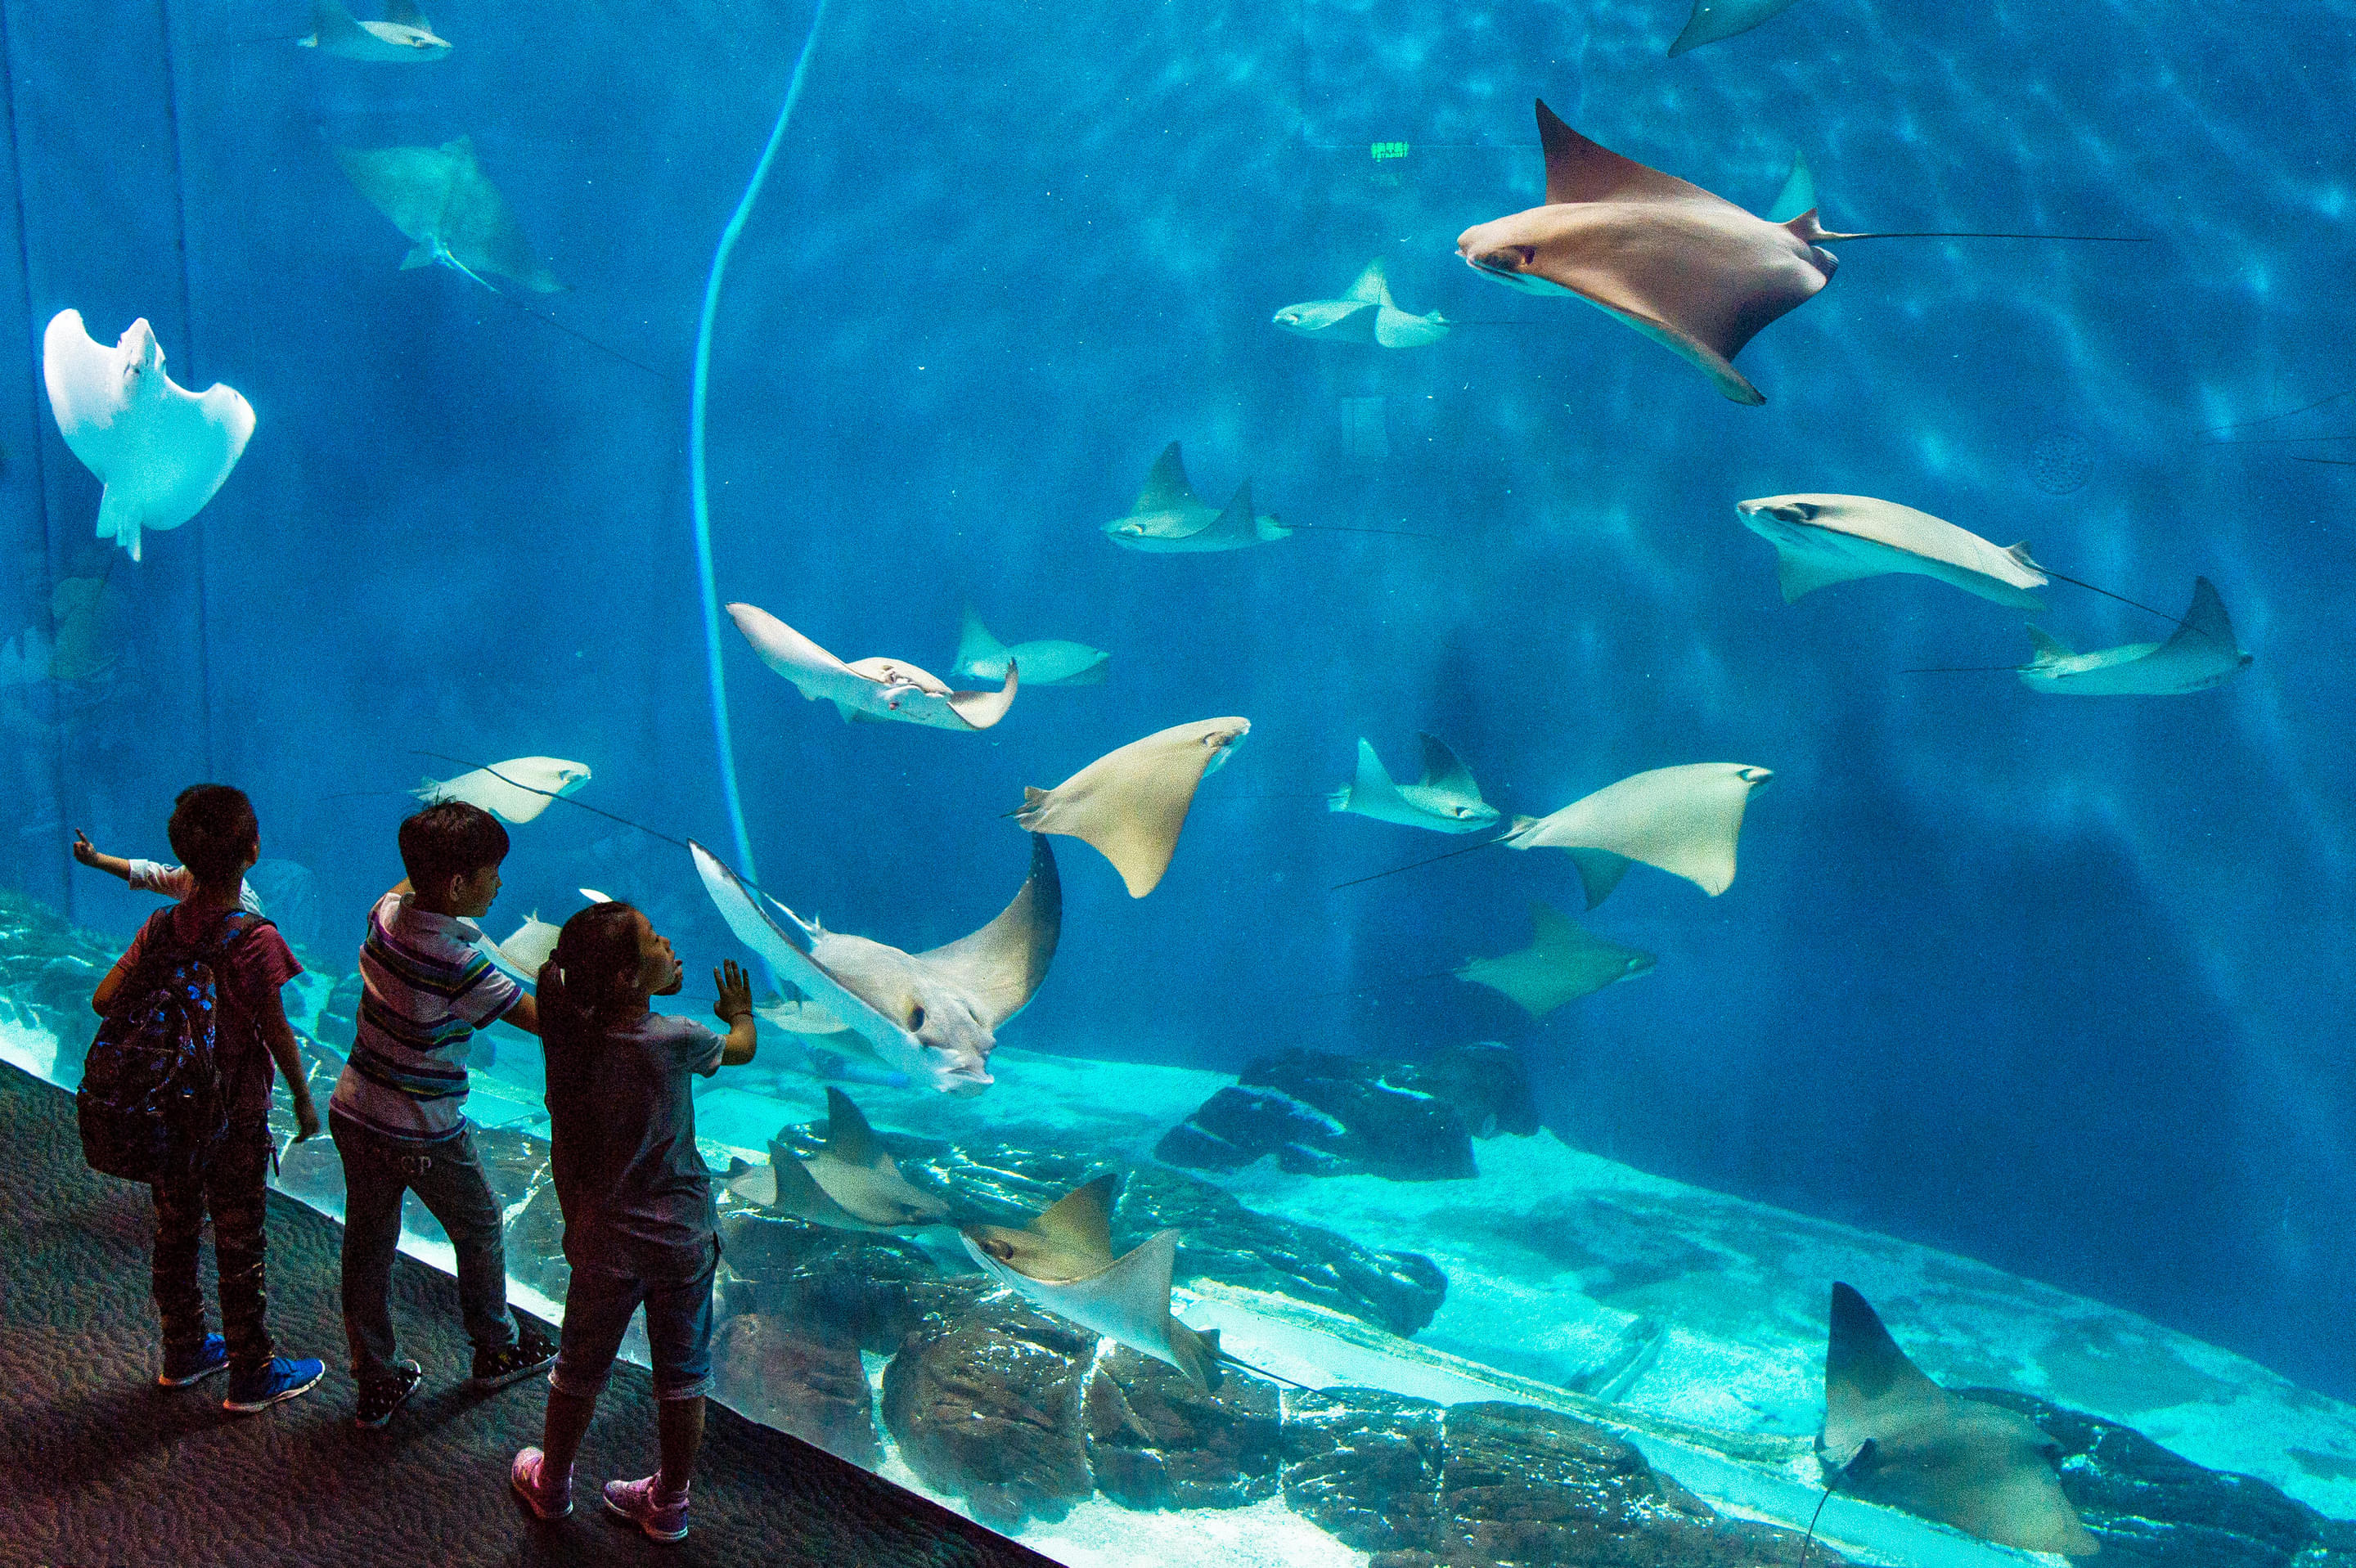 Shanghai Ocean Aquarium Overview